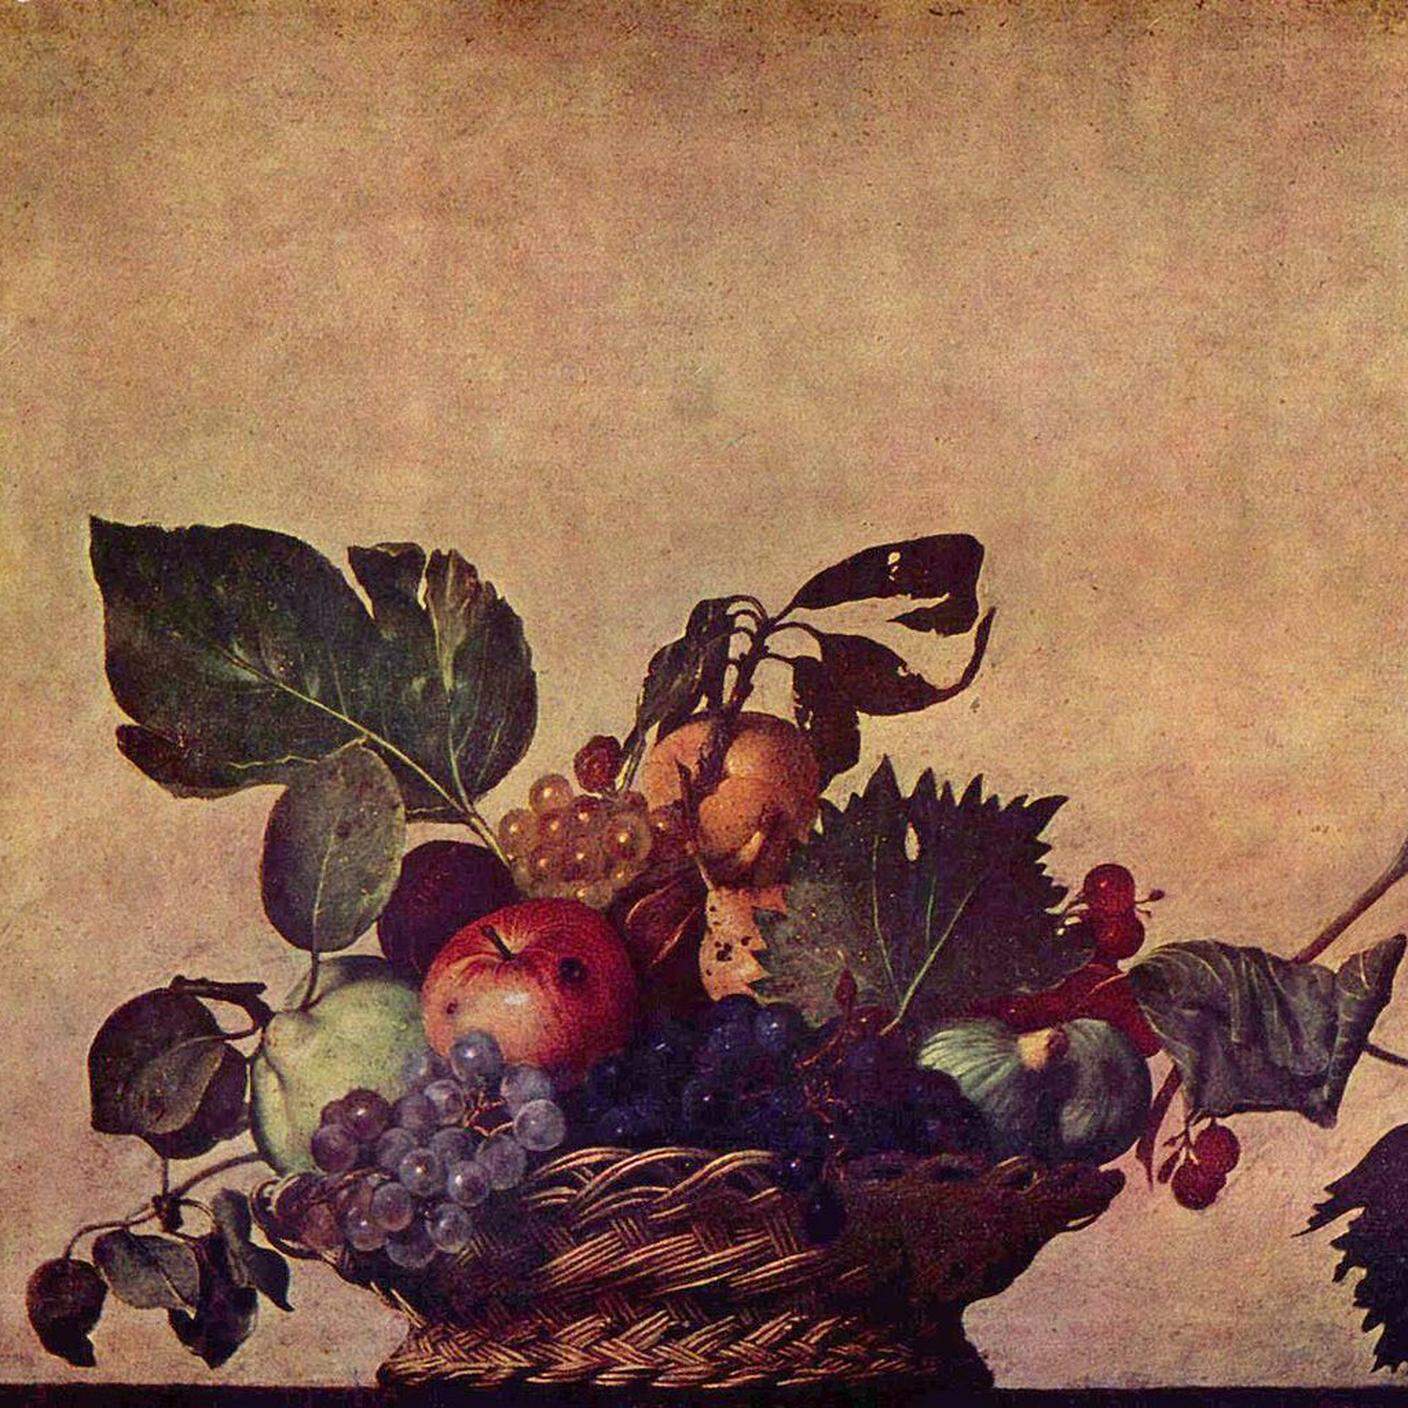 Michelangelo Merisi da Caravaggio, "Canestra di frutta", 1596